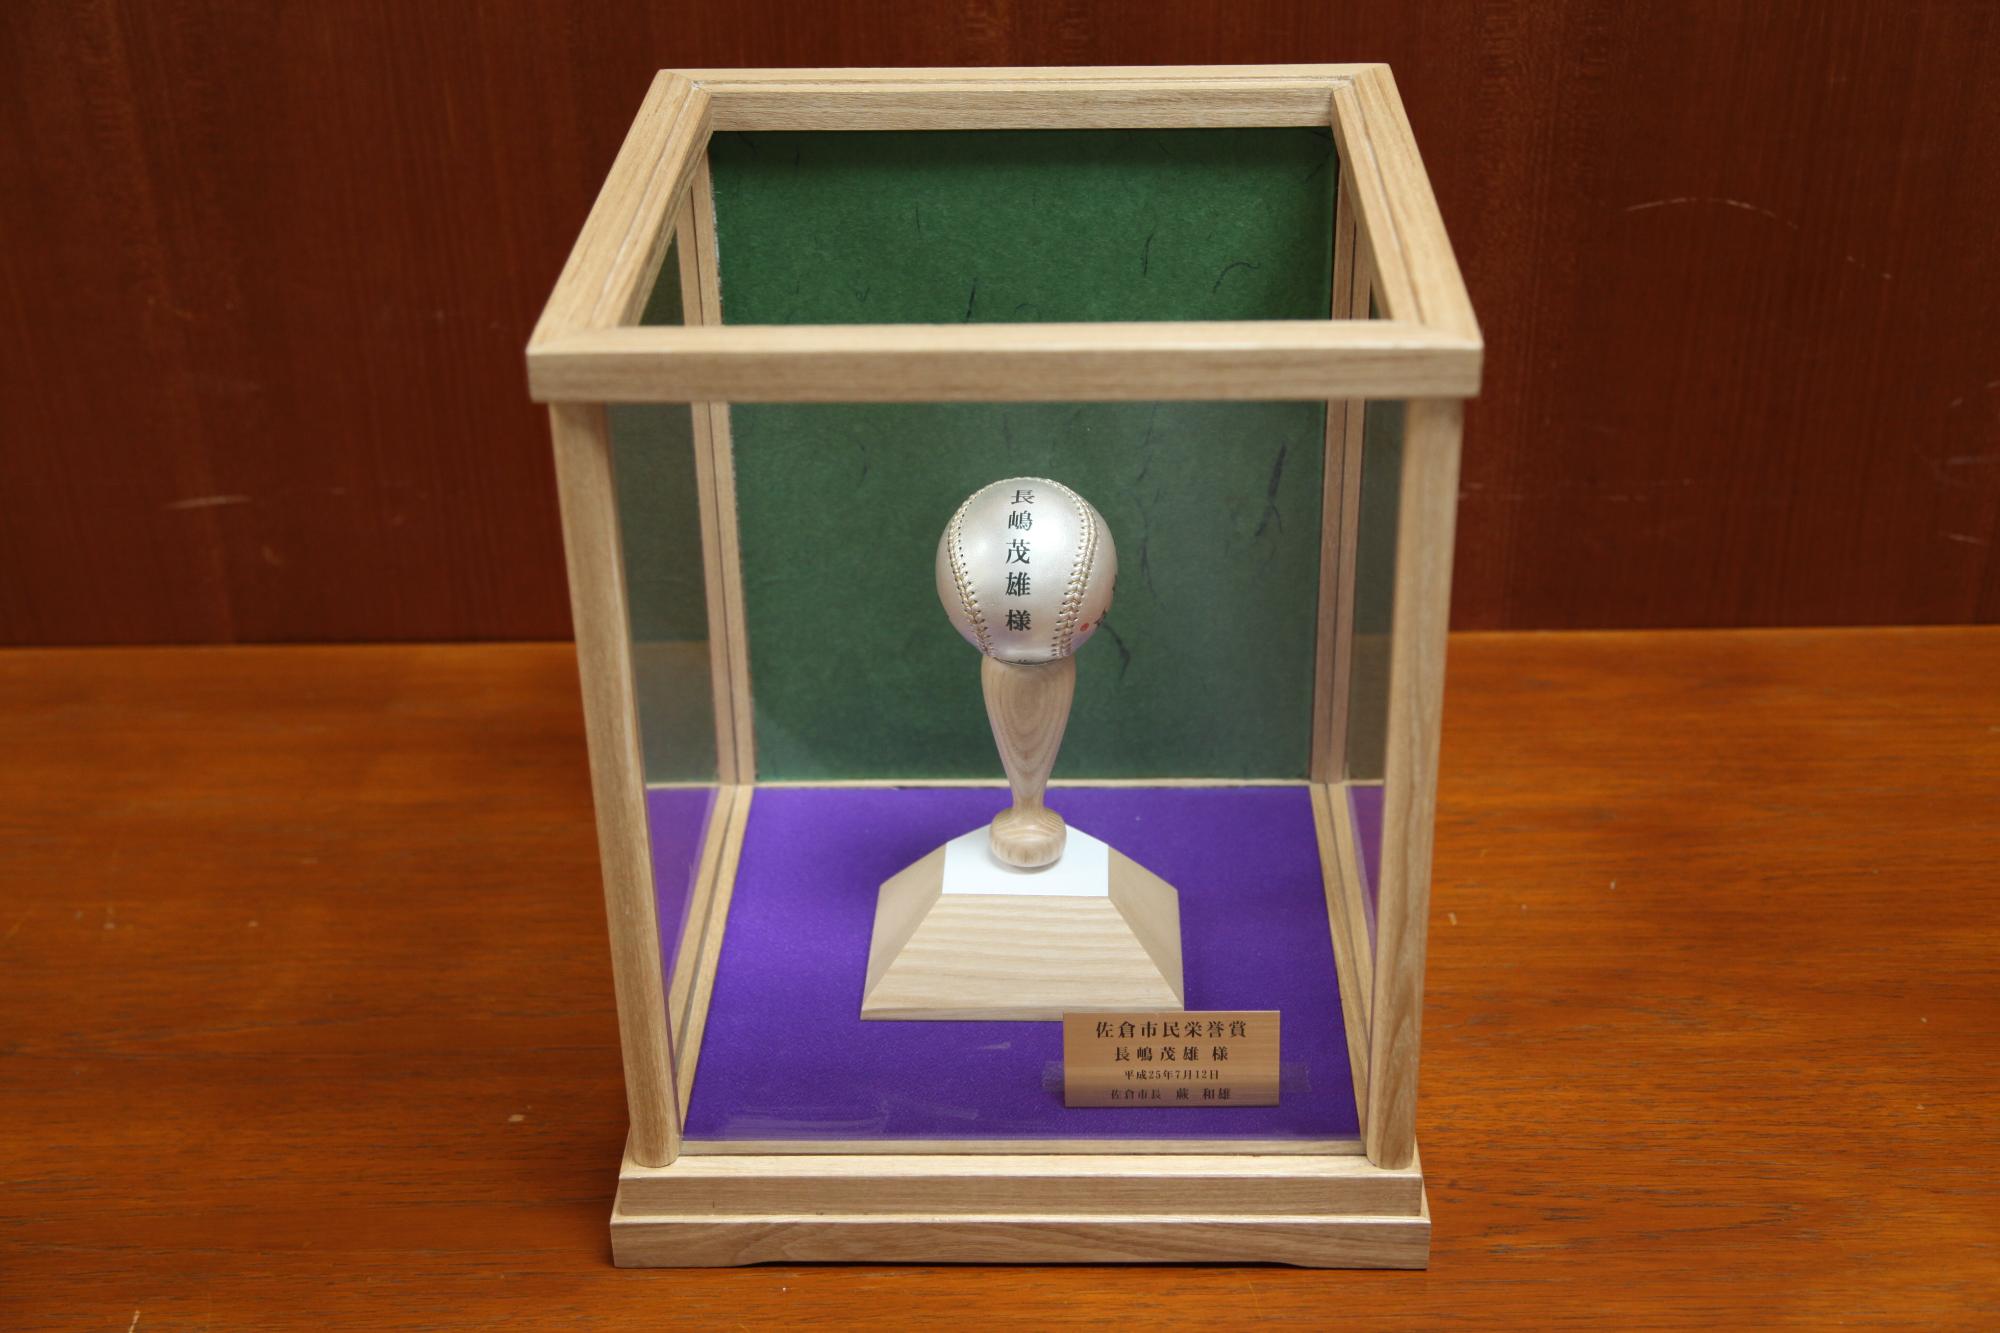 バットの上に銀製の野球ボールがのっている作品がケースに入っている写真